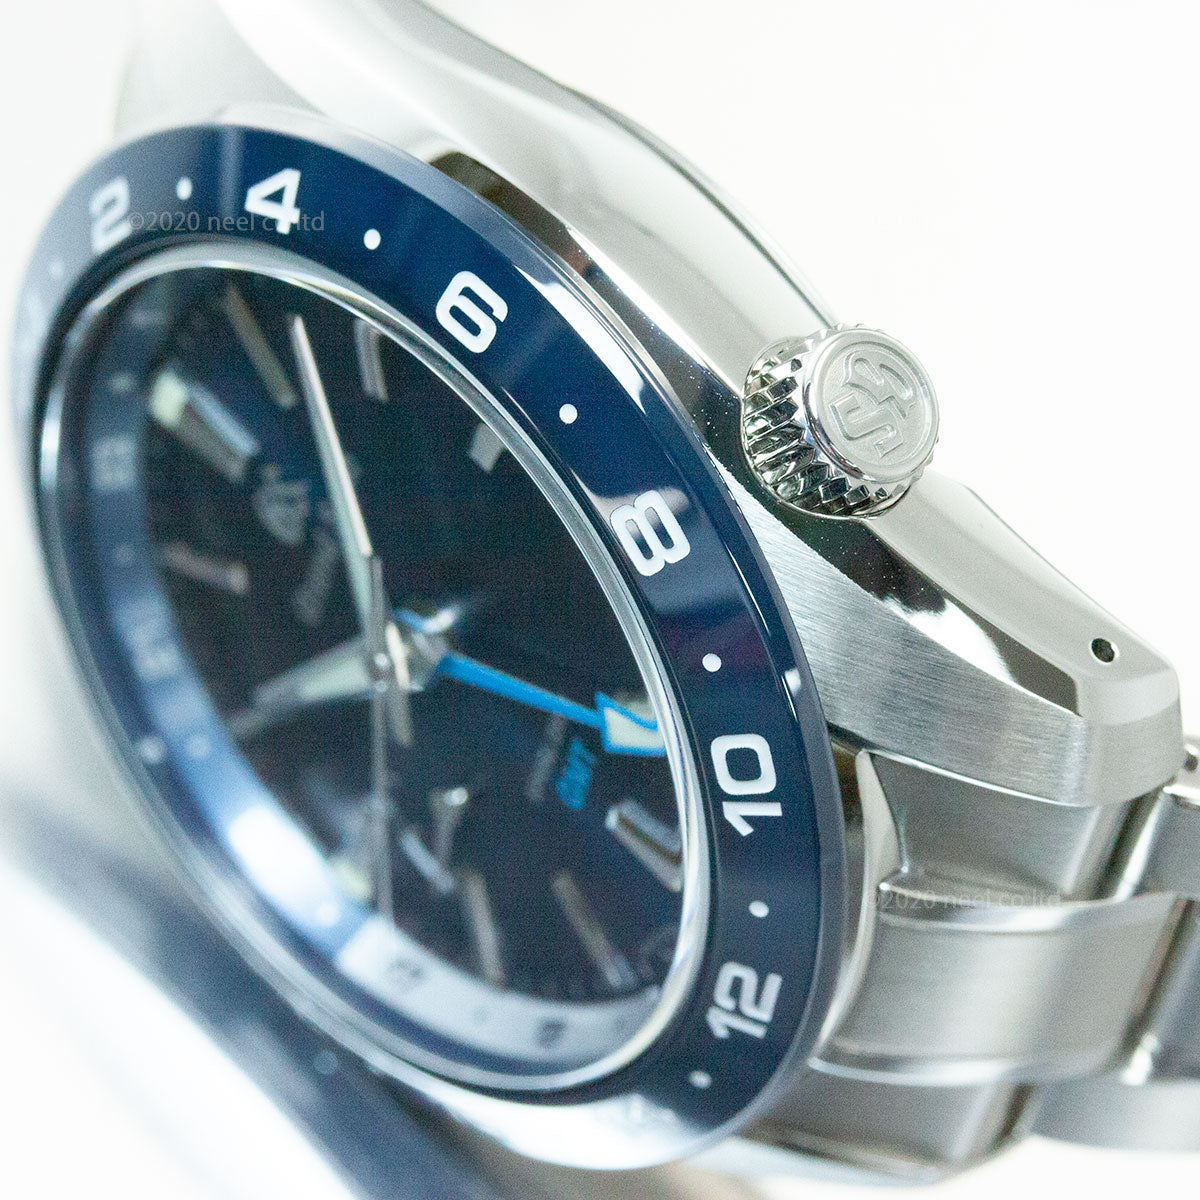 グランドセイコー SBGE255 スプリングドライブ GMT メンズ 腕時計 GRAND SEIKO ブルー【正規品】【36回無金利ローン】